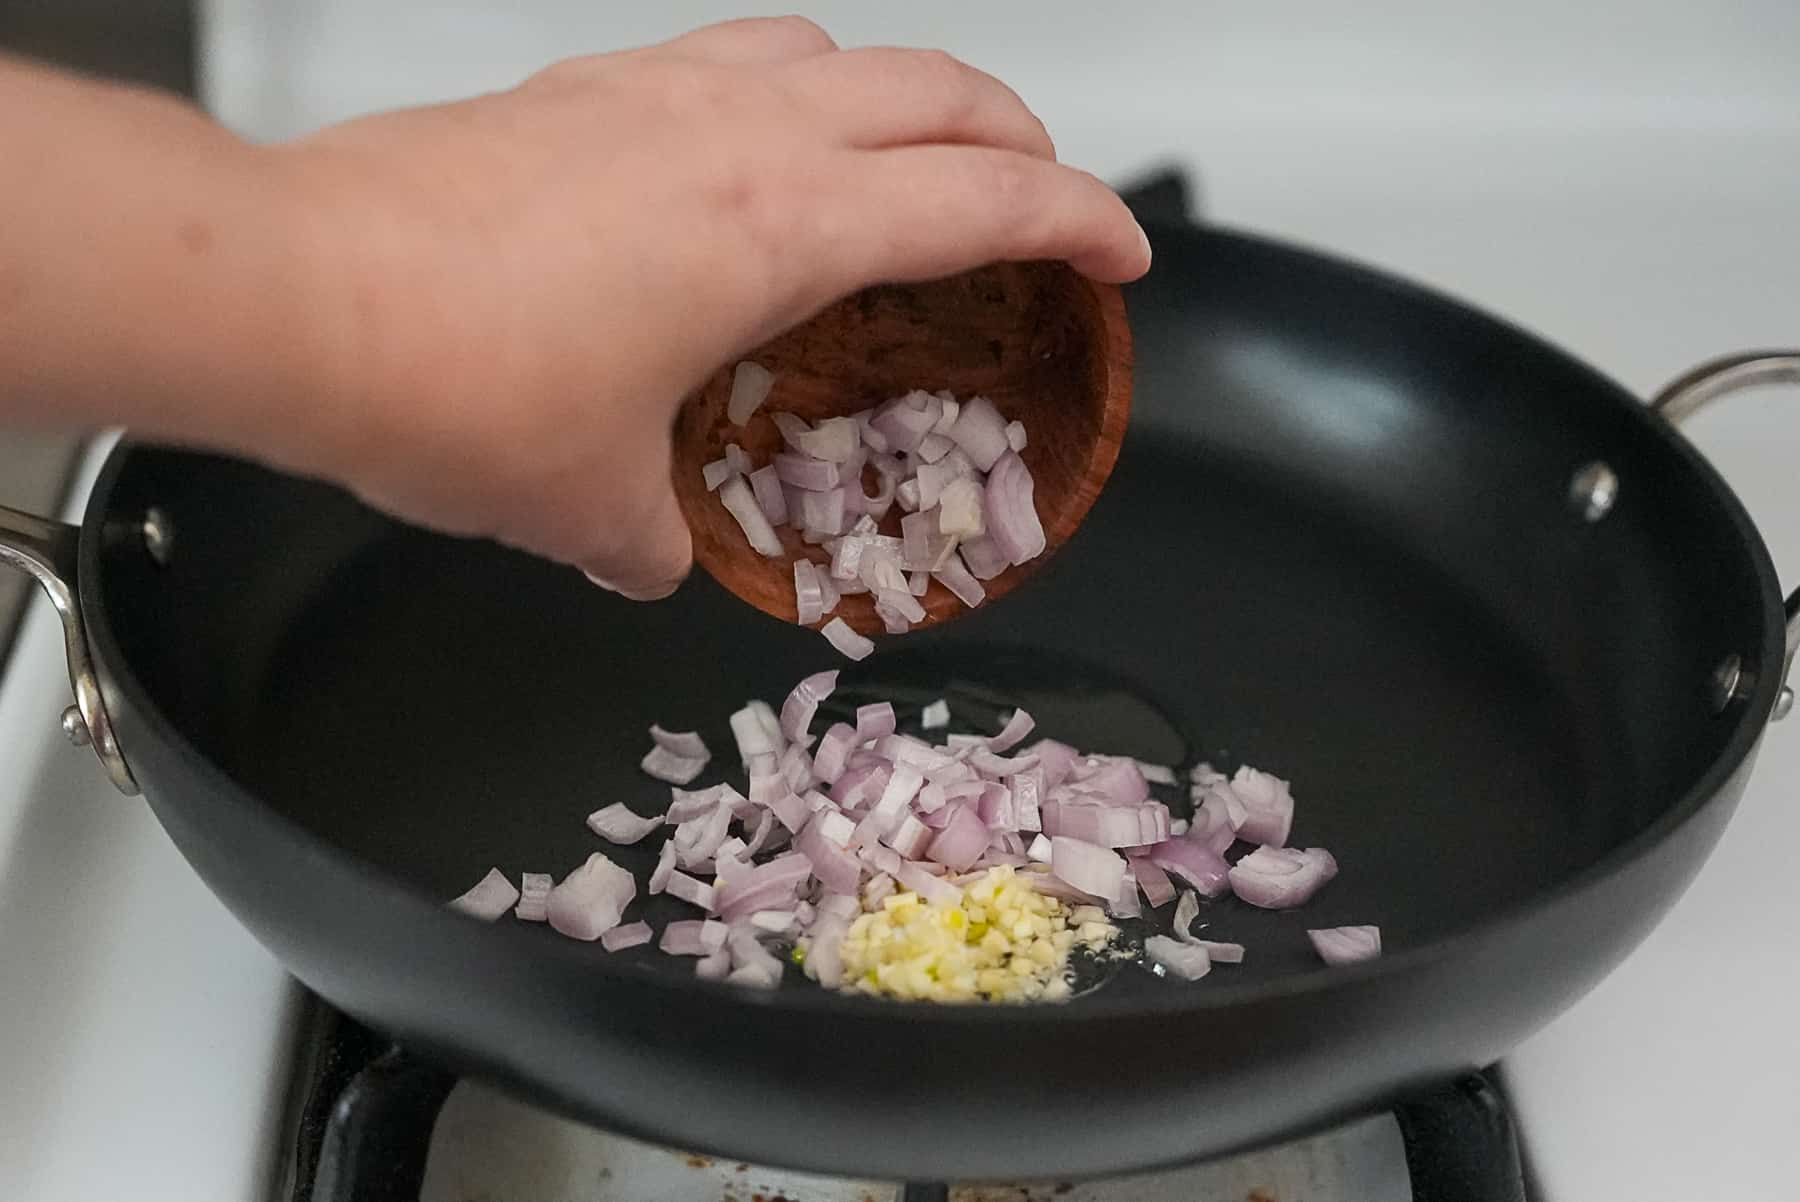 Saute the garlic and shallots